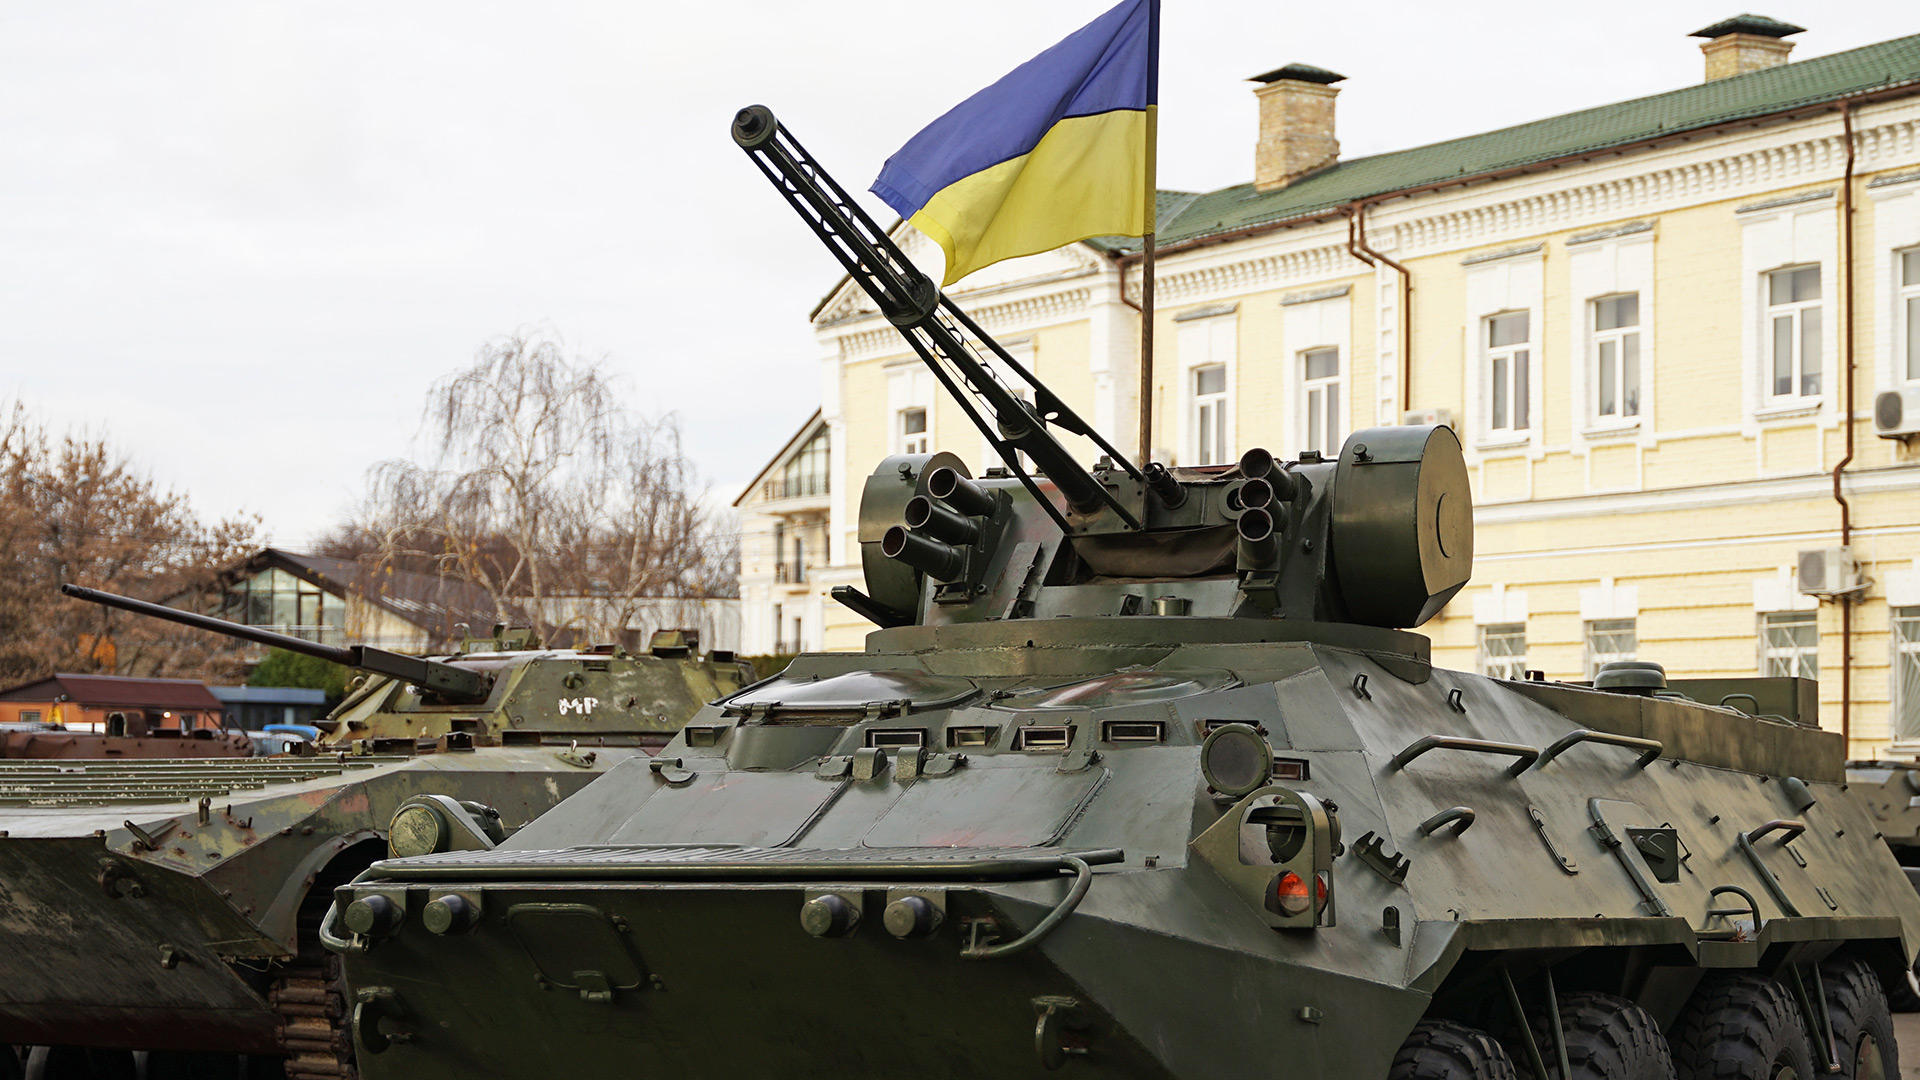 Ukrainische Panzer fahren mit Russensprit (Foto: Shutterstock)